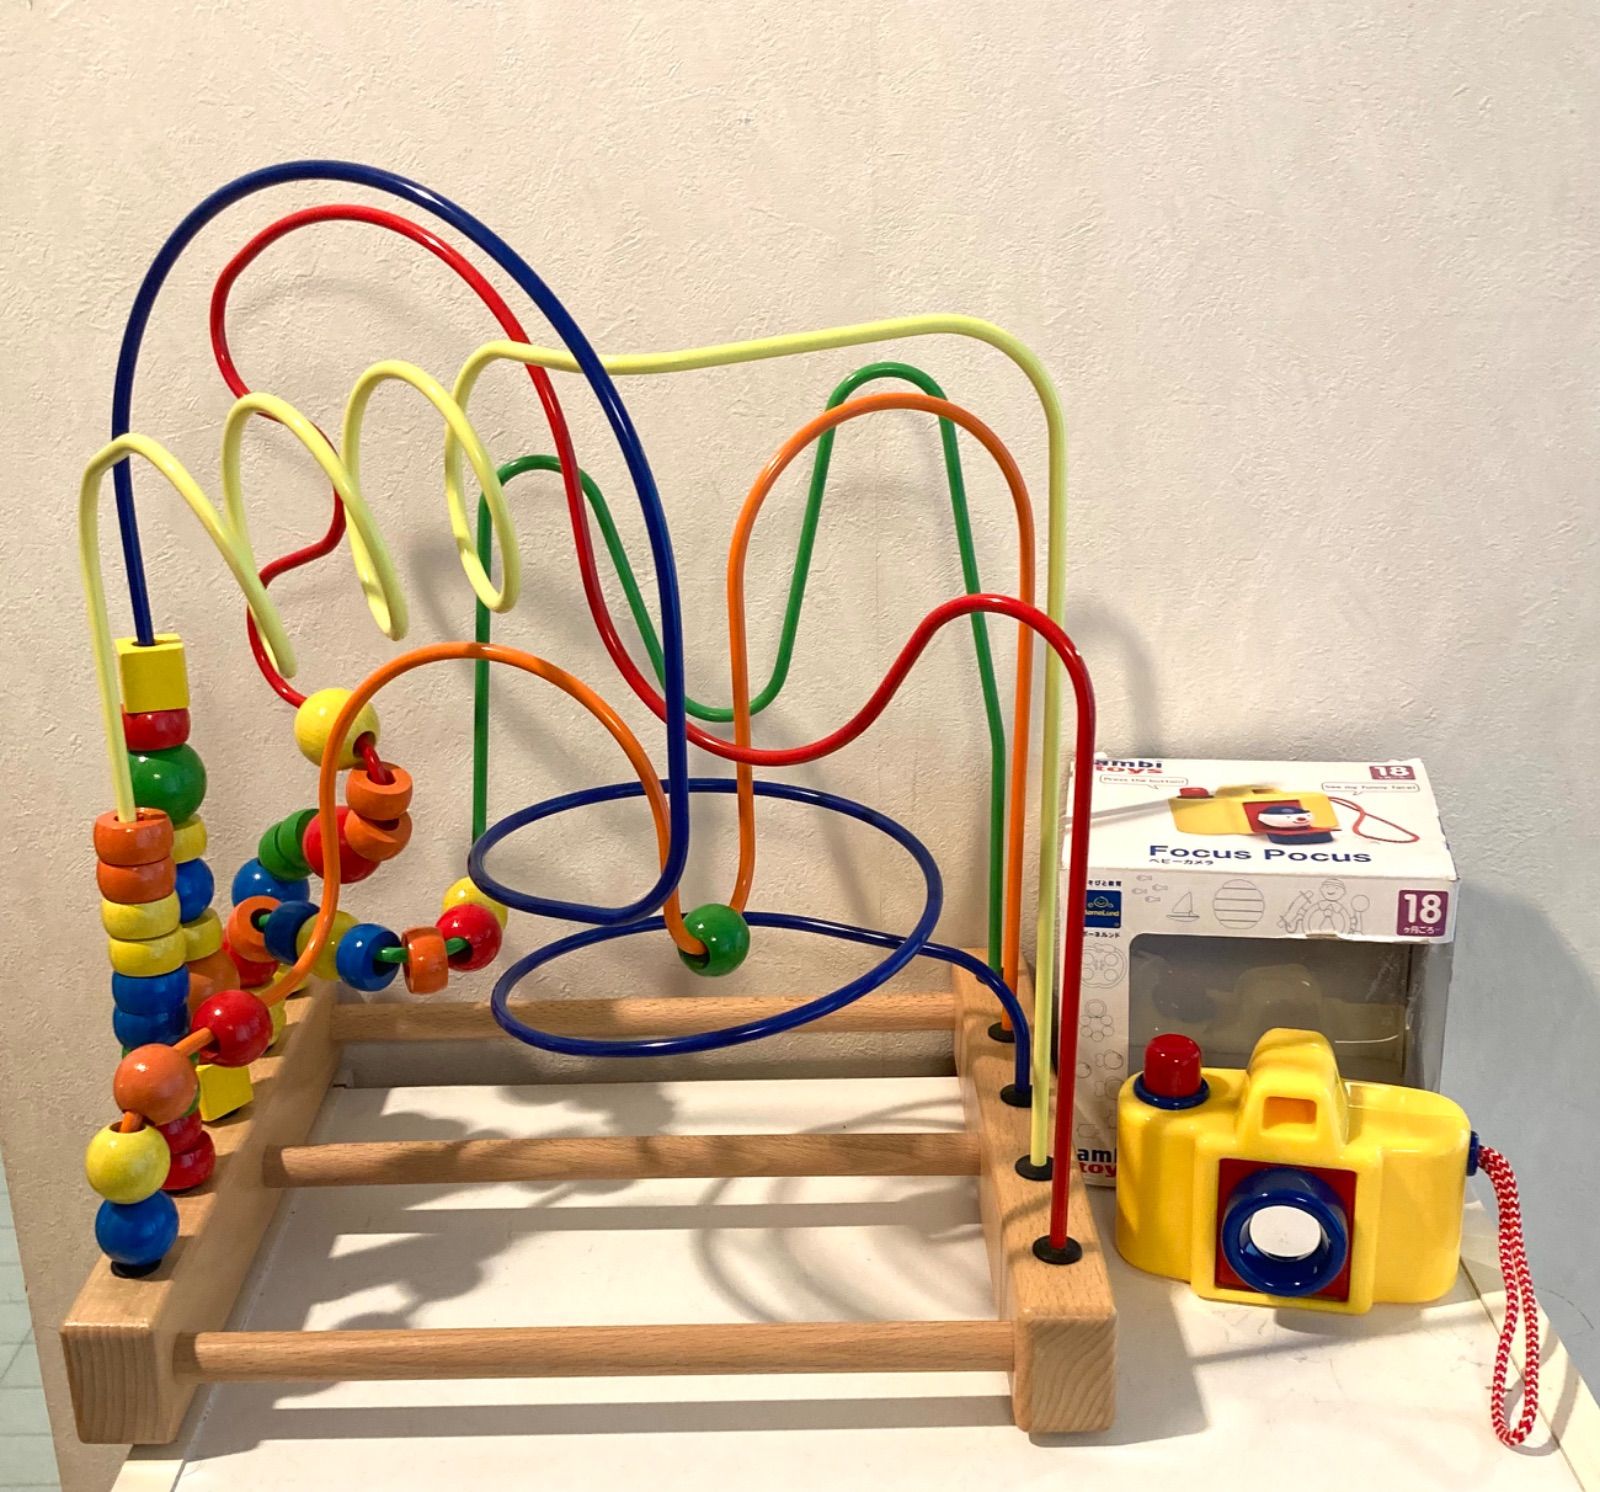 ボーネルンド ルーピング チャンピオン(IKEA) - 知育玩具